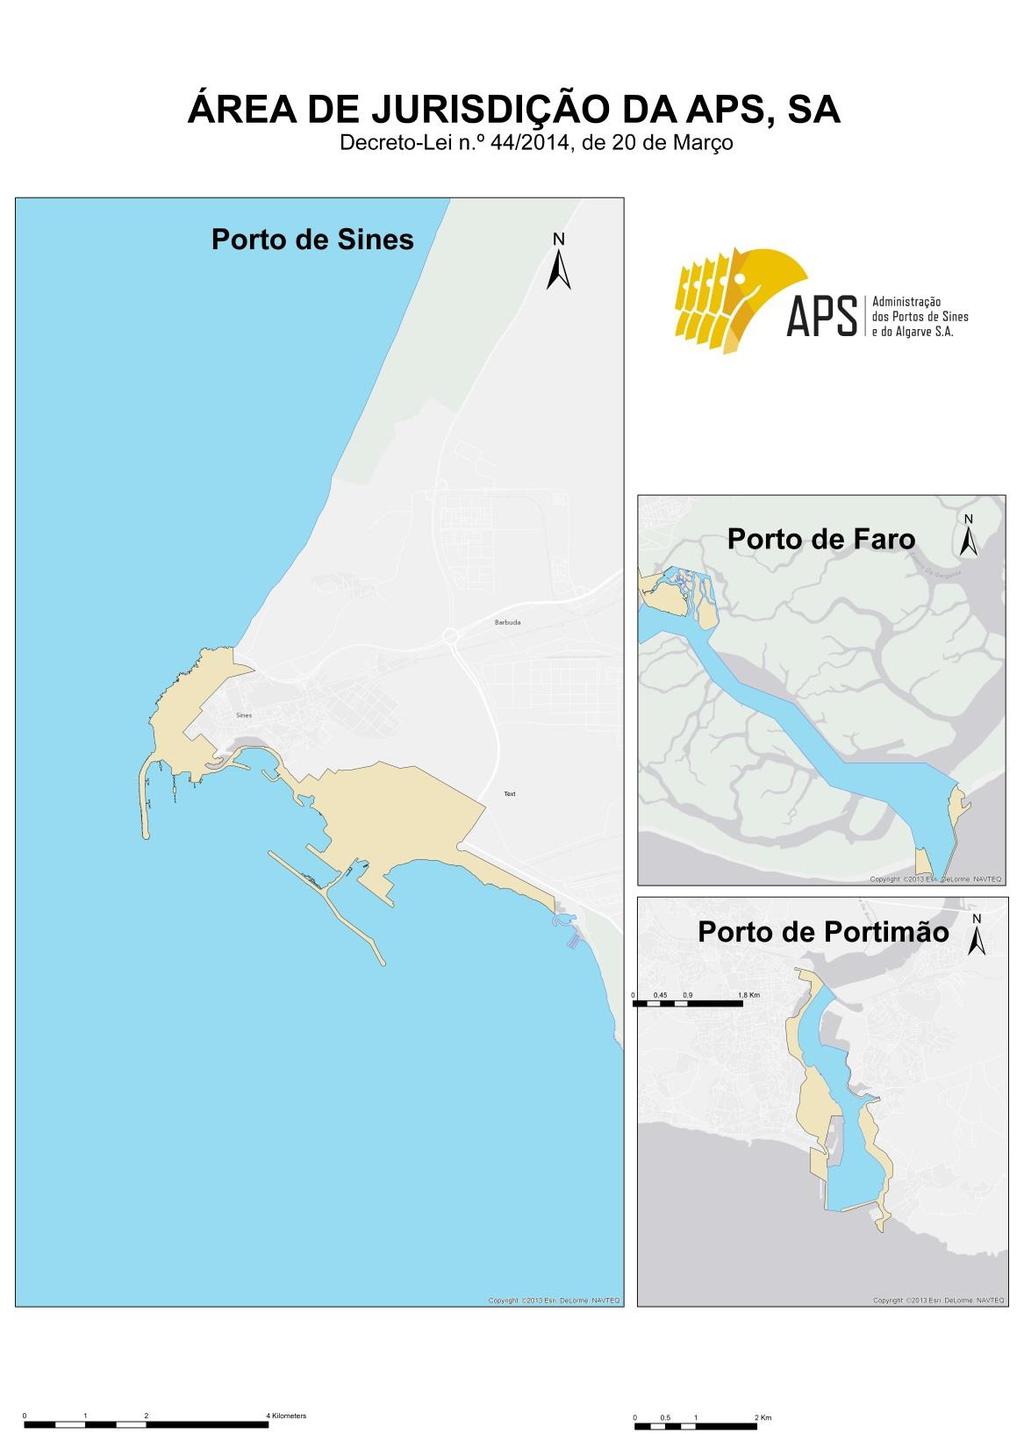 Atividades da Autoridade Portuária Os portos conjugam diferentes áreas relacionadas